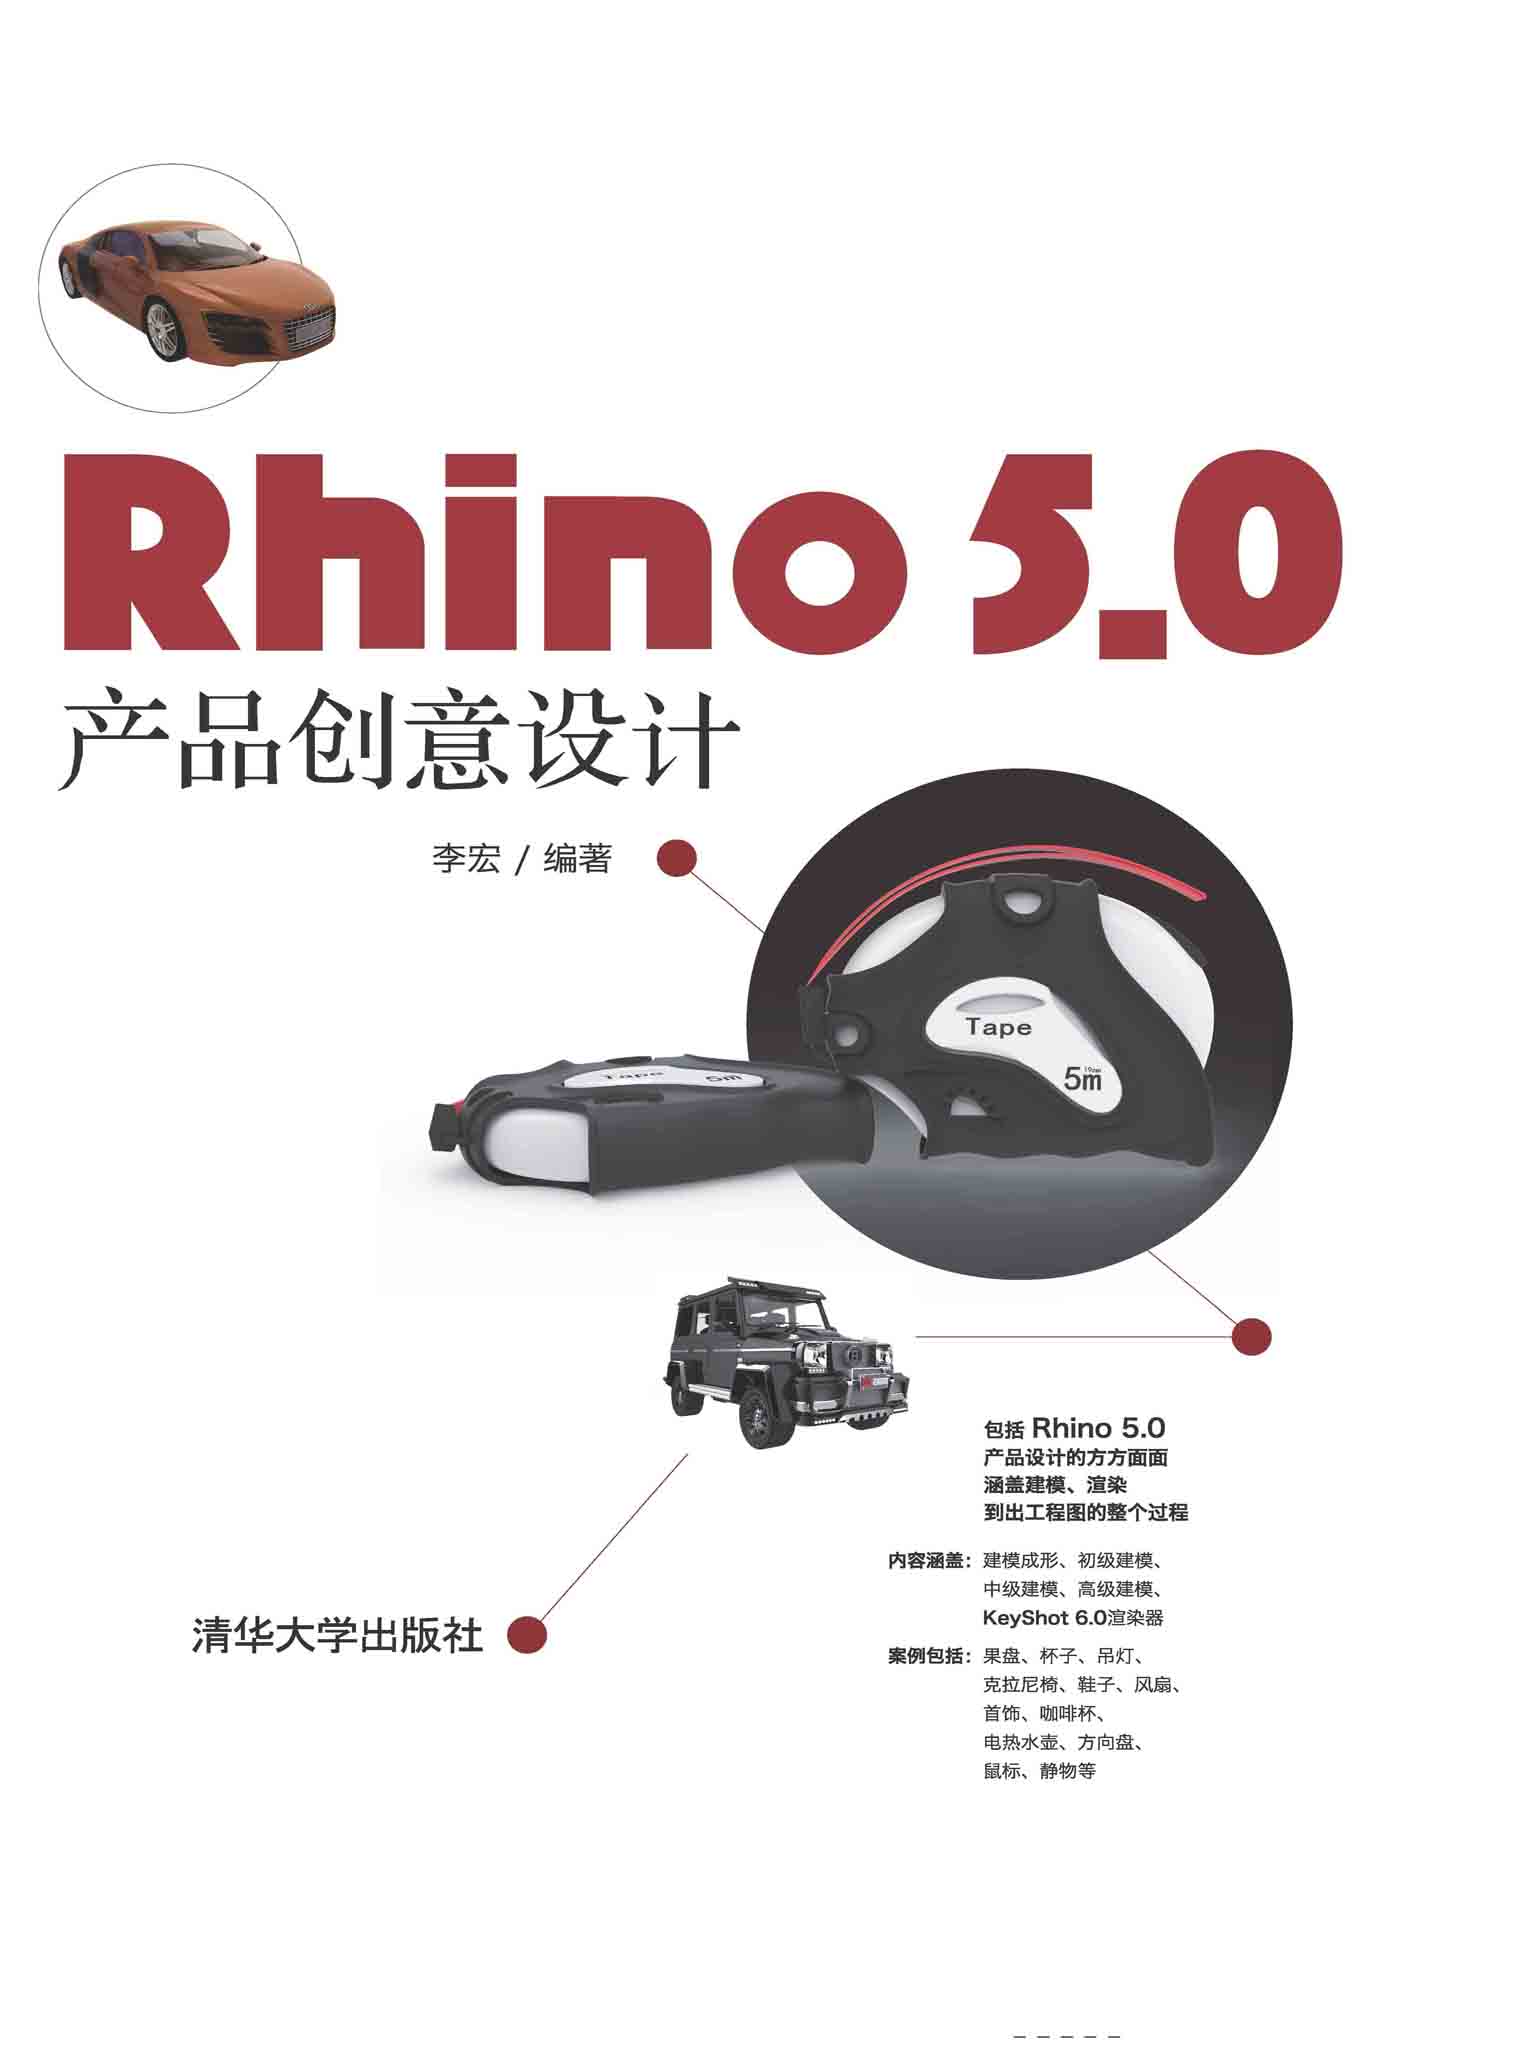 Rhino 5.0 产品创意设计